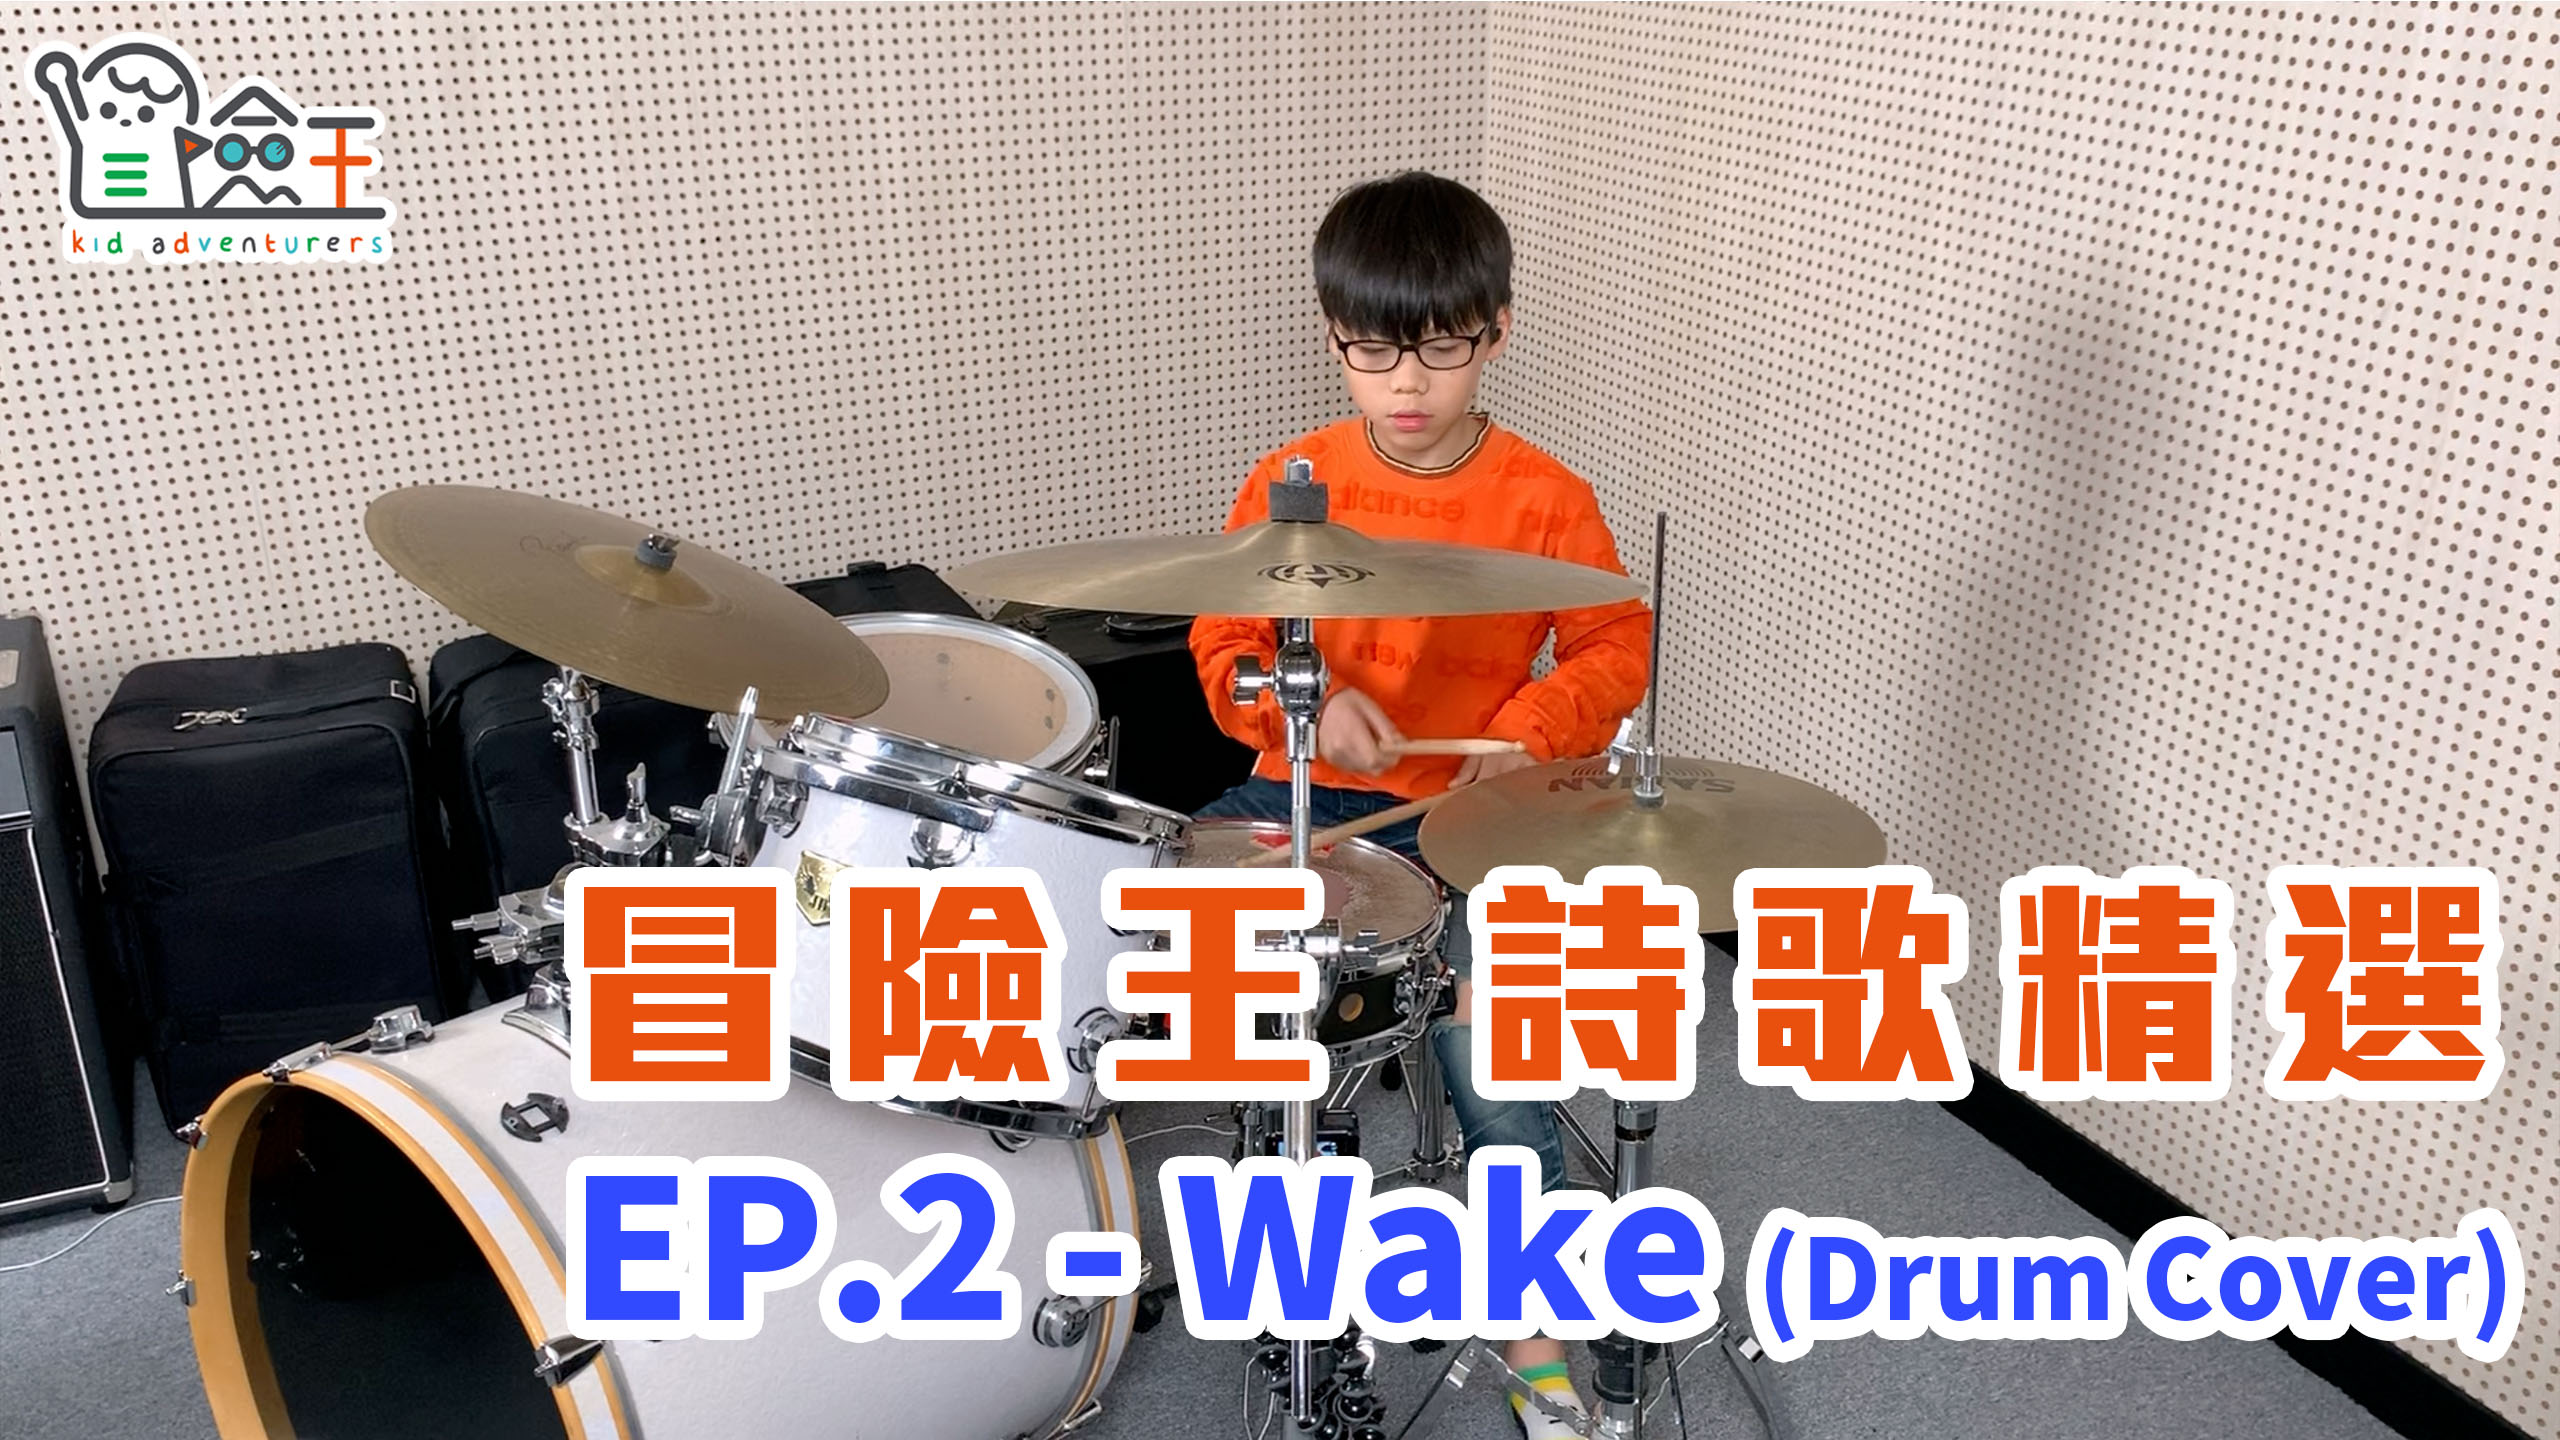 【精彩節目】冒險王詩歌精選 EP.2 | Wake (Drum cover)